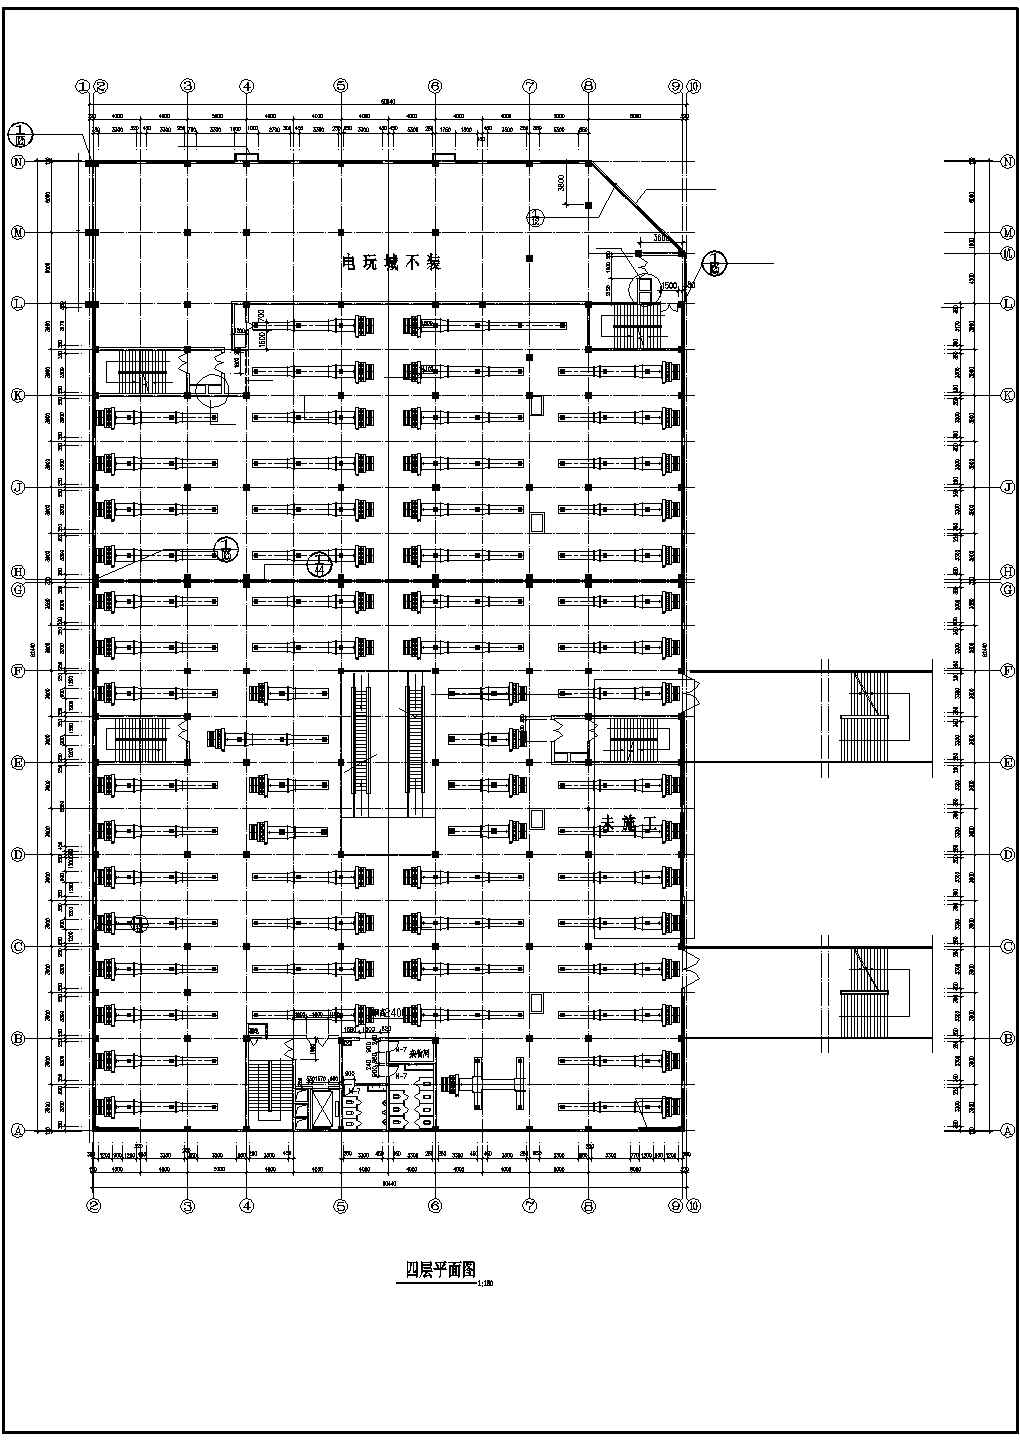 多层商场建筑空调通风系统设计施工图